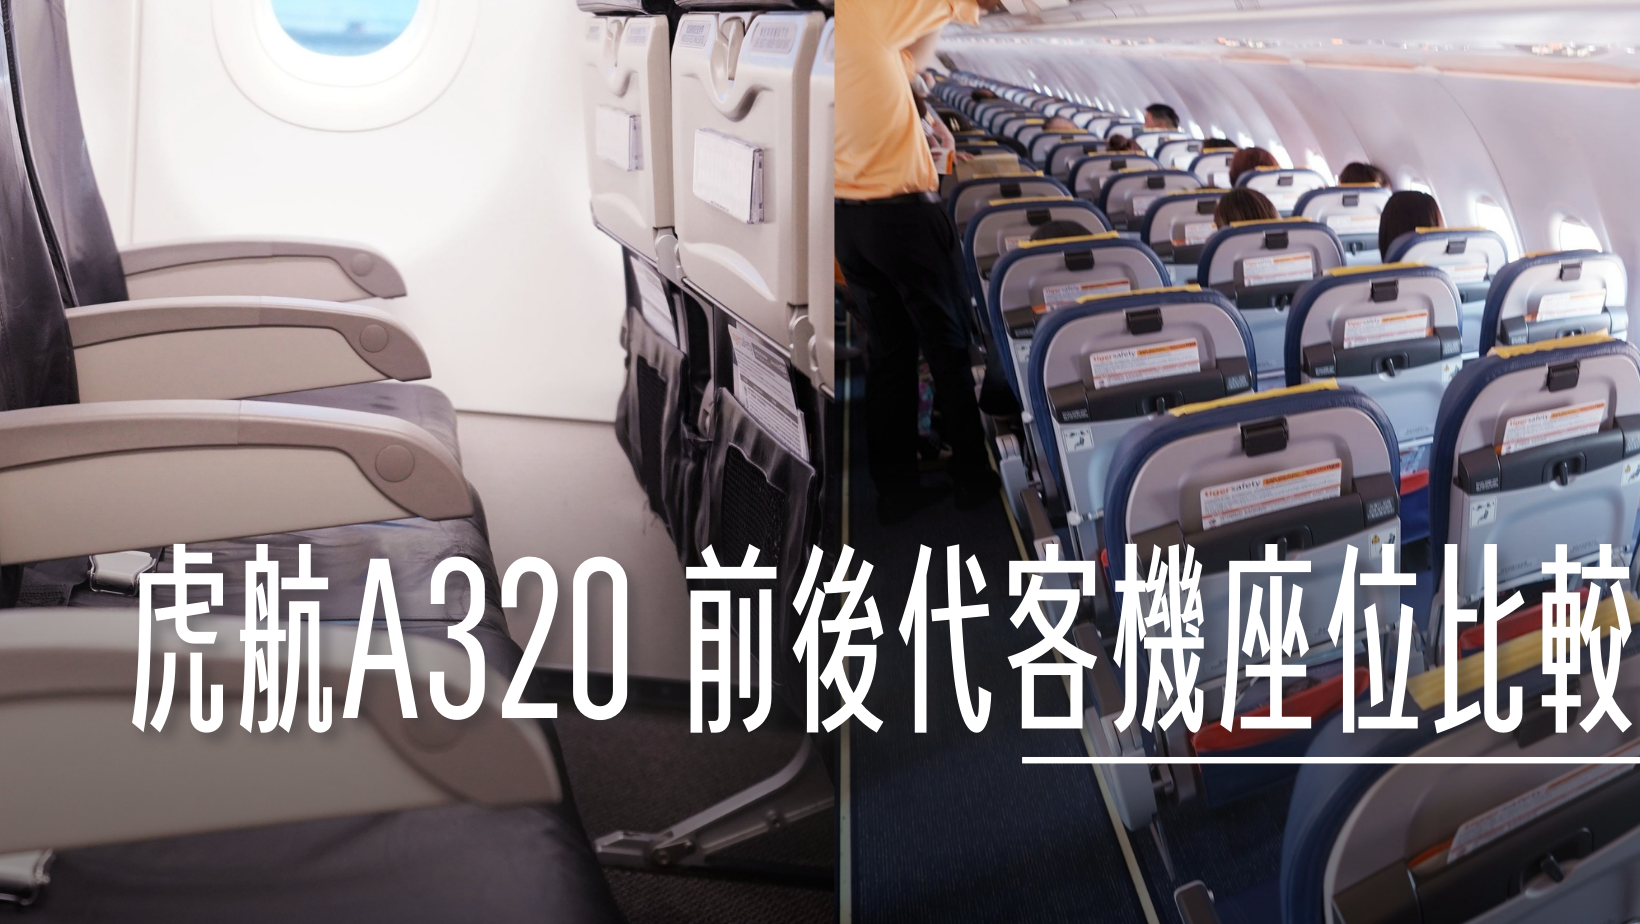 2022-10 日本,A20N,A320-200,A320-200 CEO,A320CEO,A320NEO,AIRBUS,LCC,RECARO,SMARTCAT,TAIWAN TIGERAIR,低成本航空,傑西飛行記錄,加大行李架,台灣虎航,單走道客機,大阪,座位選擇,廉價航空,窄體客機,經濟艙,經濟艙飛行記錄,華航,華航集團,虎厝邊,虎快客,虎舒適,虎航,虎航位置圖,虎航座位,虎航座位大小,虎航座位推薦,虎航機上娛樂,虎航選位,虎航飛機座位,頁首重點訊息 @傑西大叔 x 這裡胡說